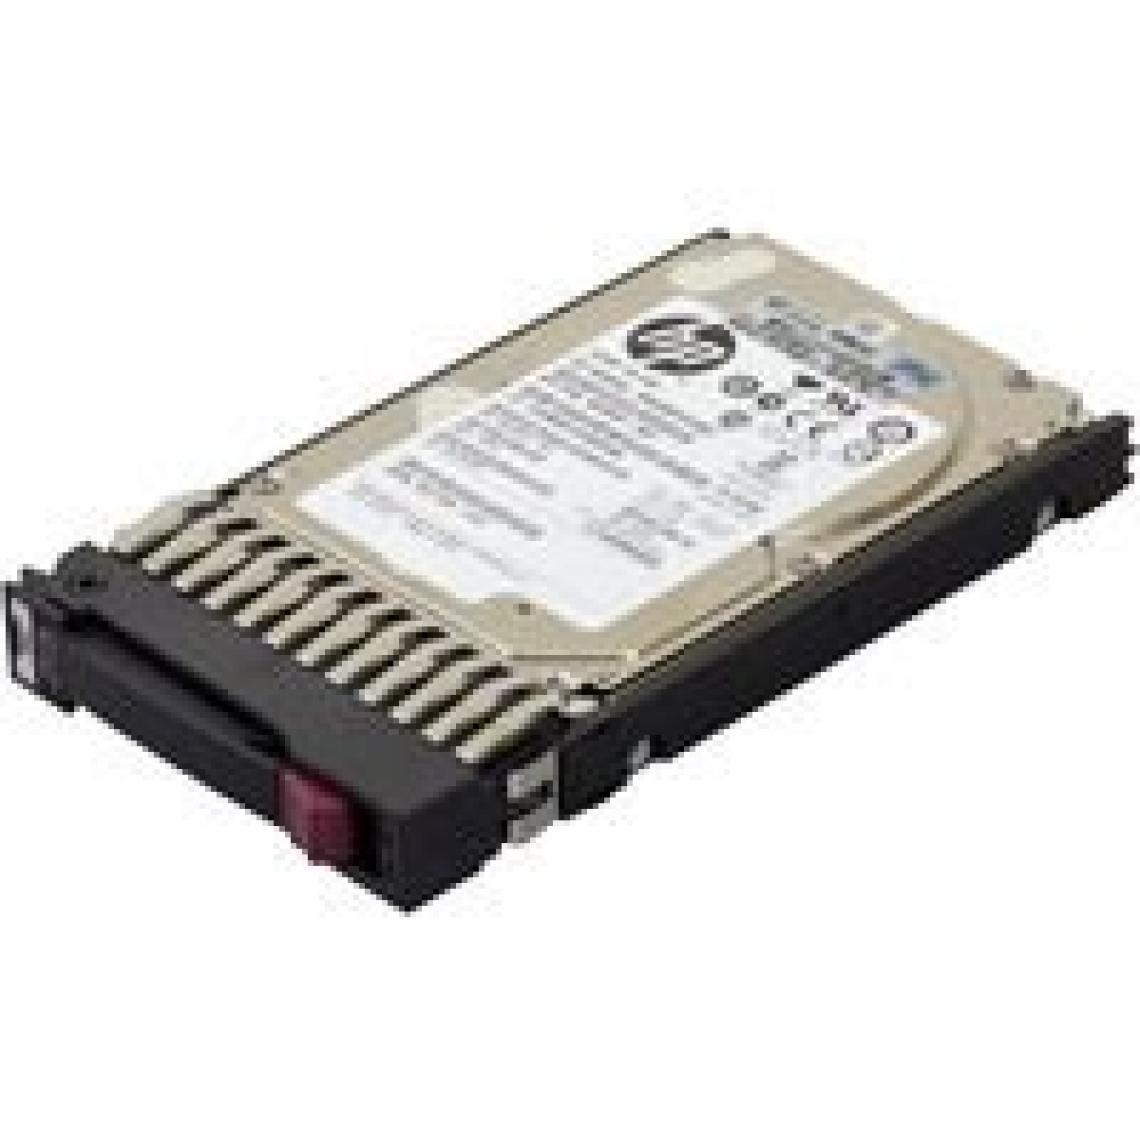 Inconnu - Hewlett Packard Enterprise 730708-001 450Go SAS disque dur - Disques durs (2.5", 450 Go, 10000 tr/min, SAS, Disque dur) - Disque Dur interne